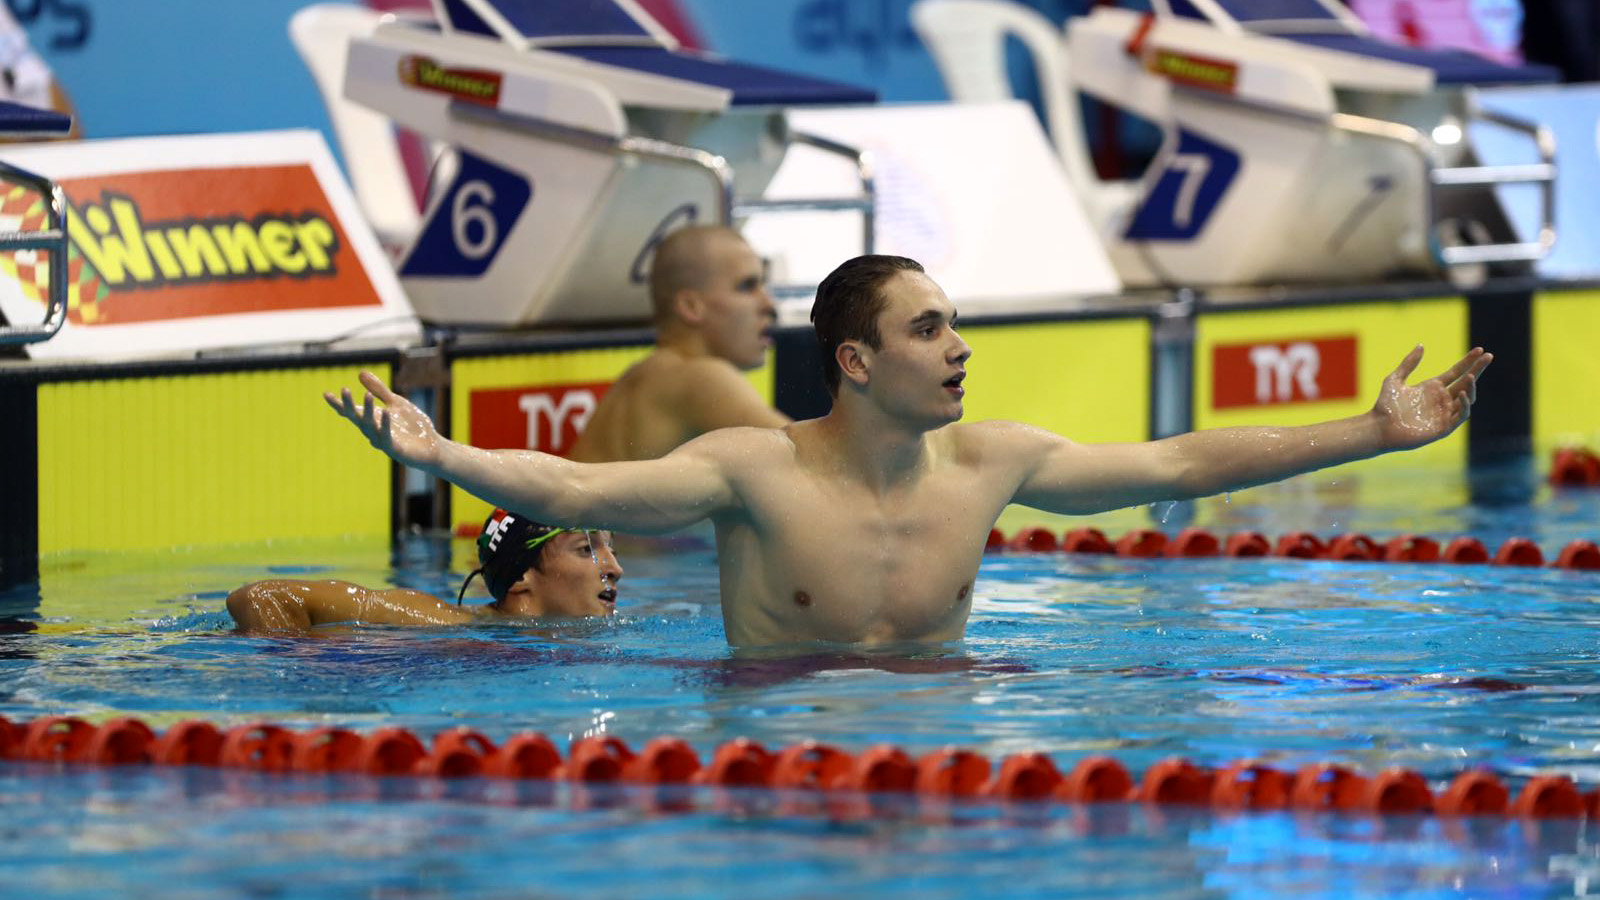 מיליאק ההונגרי קבע שיא עולם באליפות אירופה לנוער בשחייה שנערכה בבריכה הלאומית בוינגייט ( באדיבות איגוד השחייה).